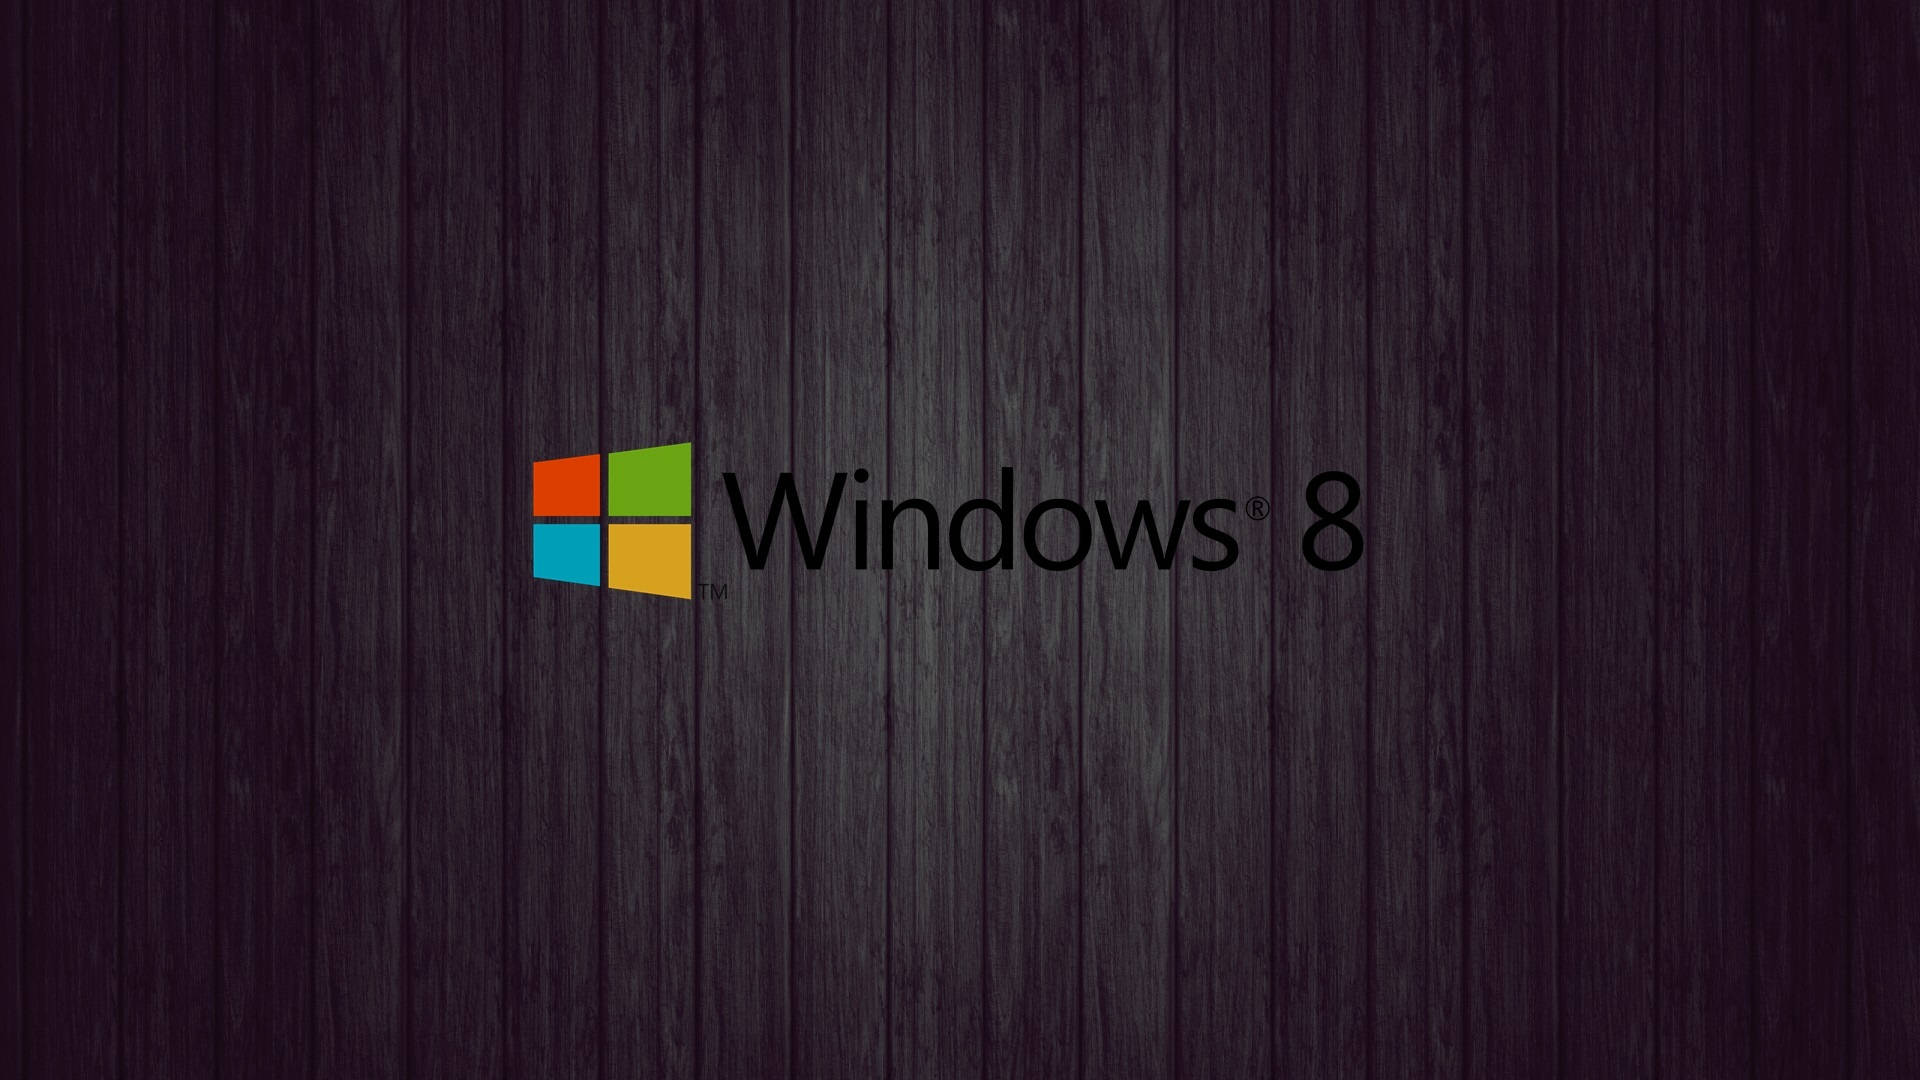 Dark Wood Windows 8 Background Wallpaper